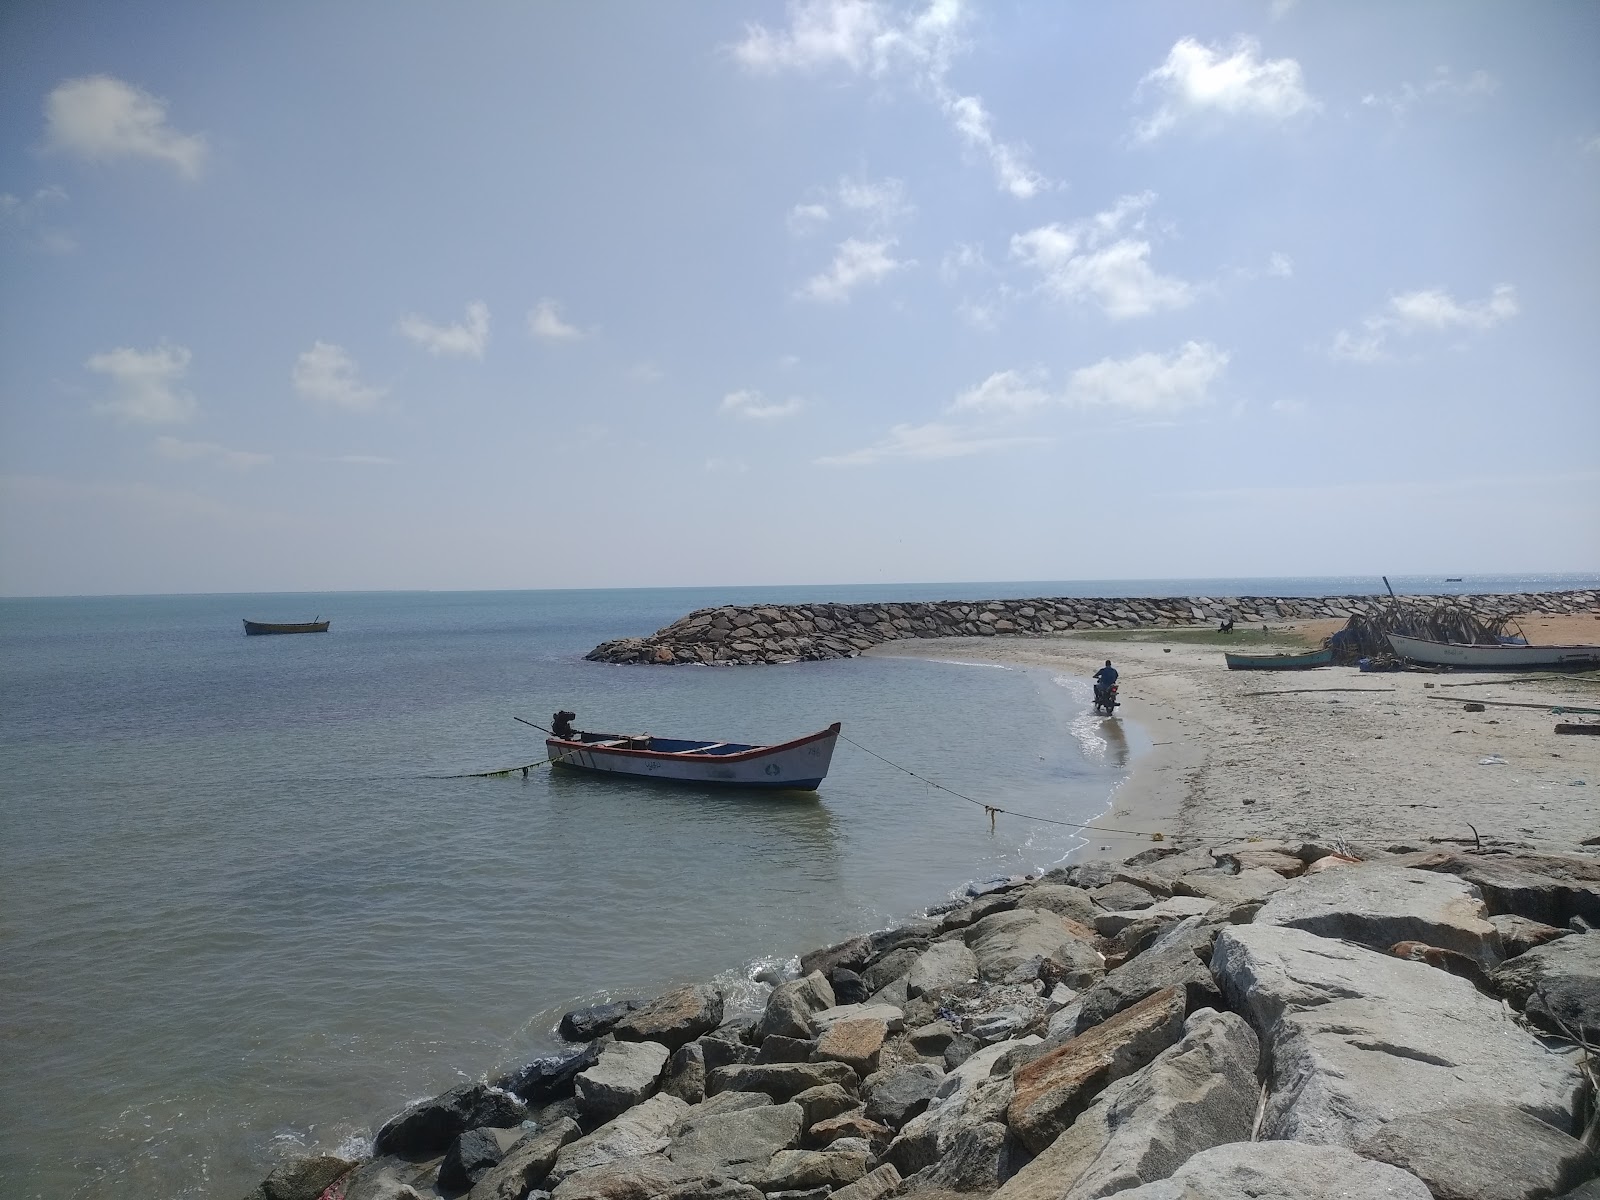 Seeni Appa Dargha Beach'in fotoğrafı geniş plaj ile birlikte